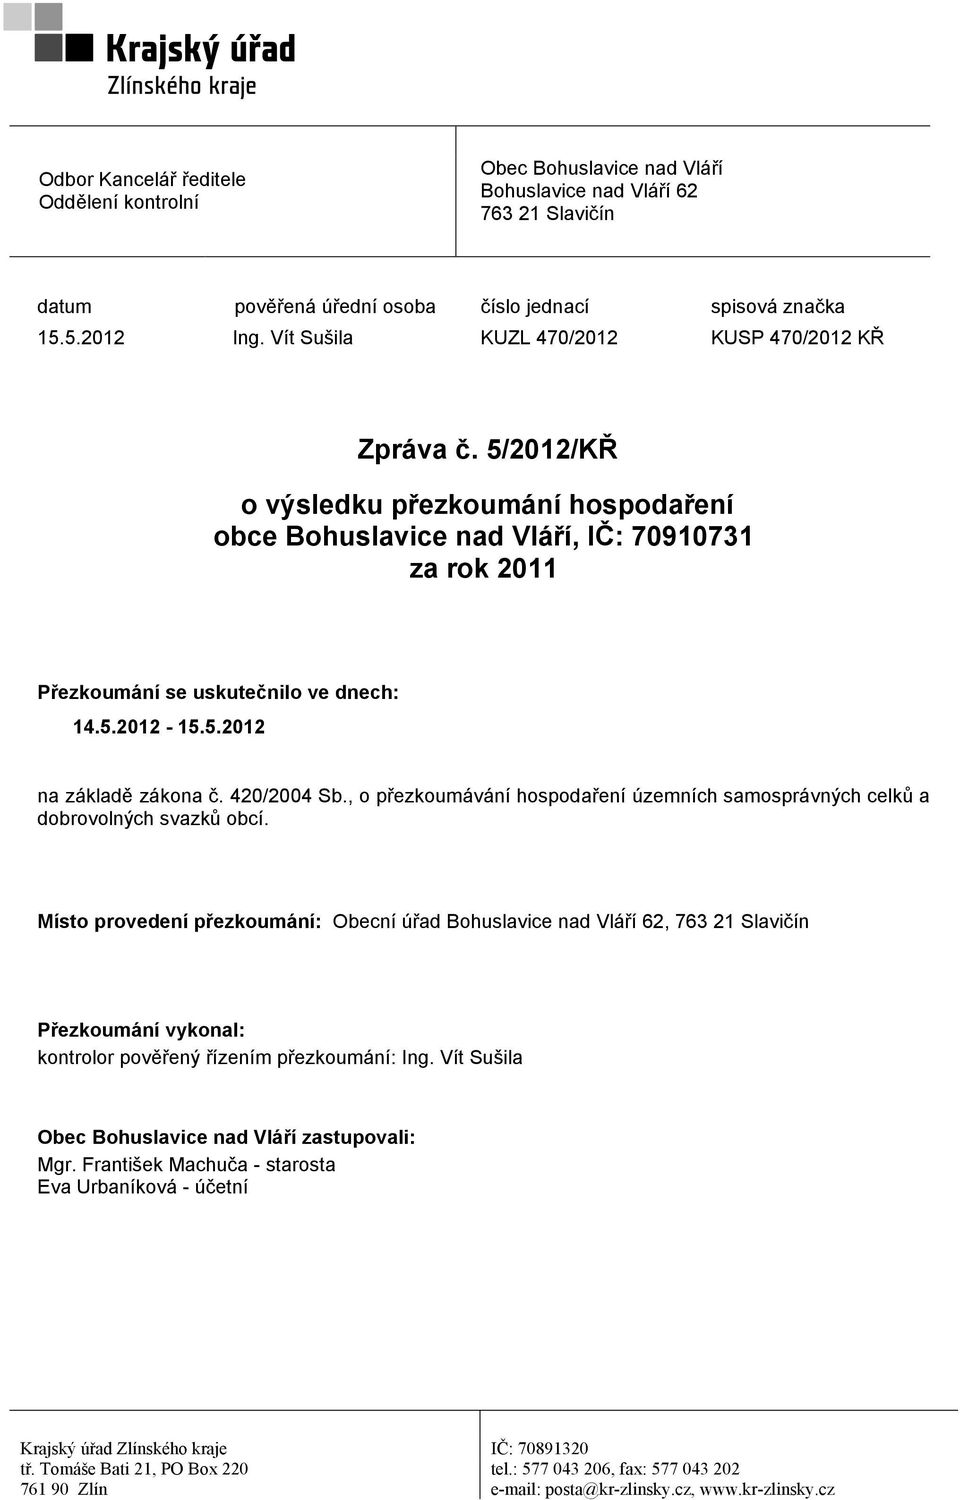 5.2012 na základě zákona č. 420/2004 Sb., o přezkoumávání hospodaření územních samosprávných celků a dobrovolných svazků obcí.